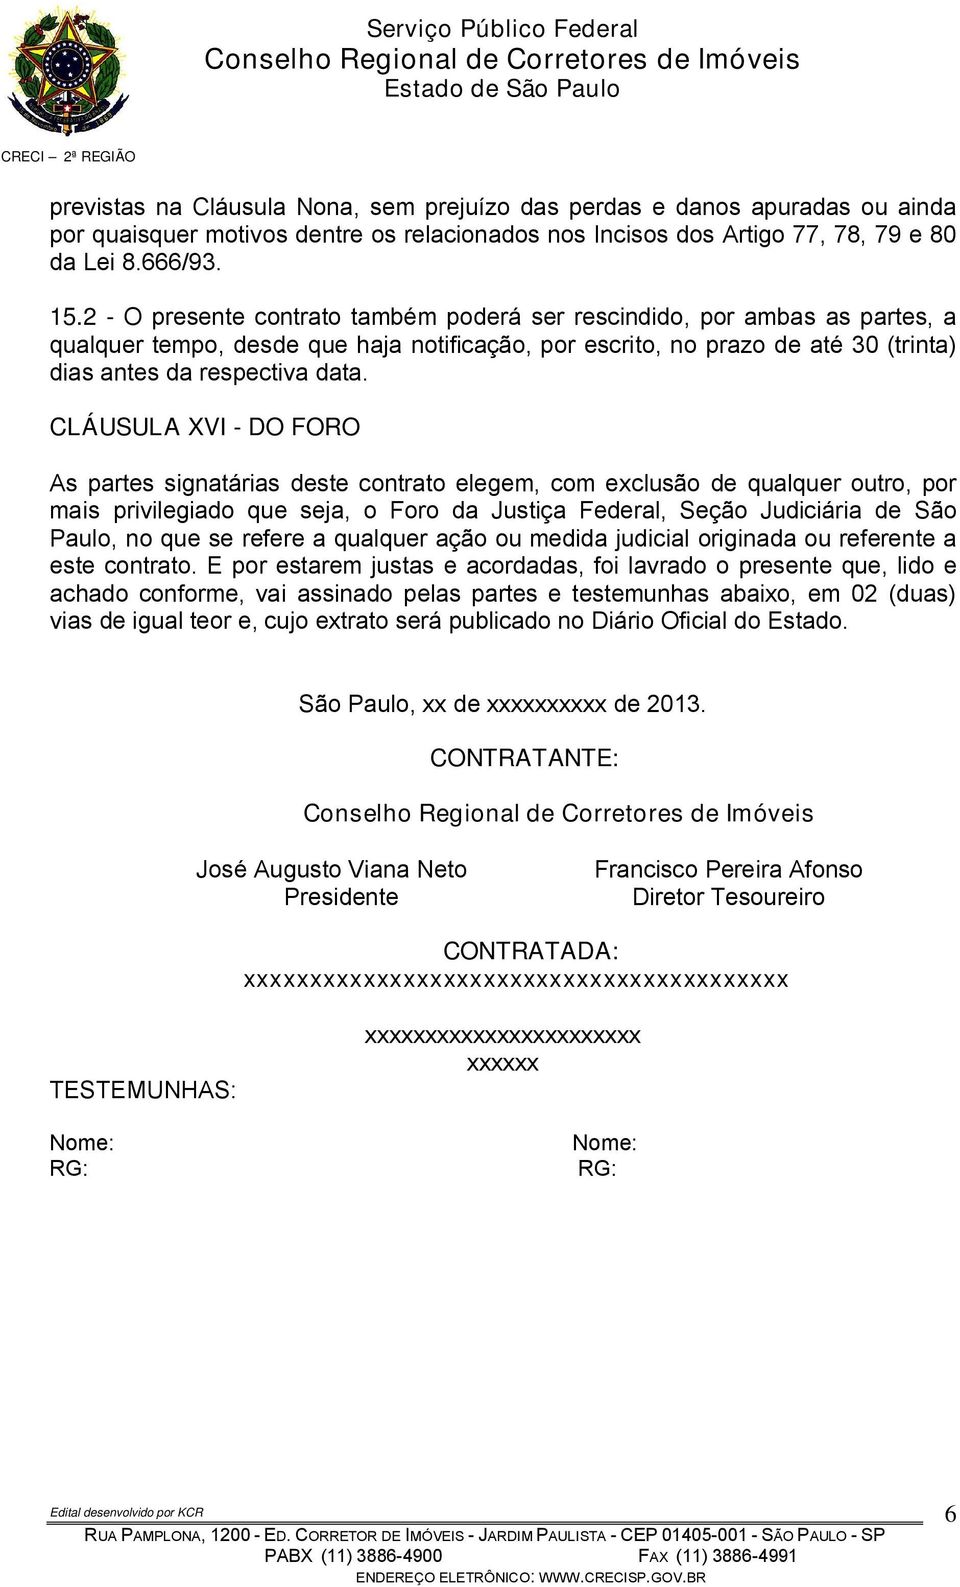 CLÁUSULA XVI - DO FORO As partes signatárias deste contrato elegem, com exclusão de qualquer outro, por mais privilegiado que seja, o Foro da Justiça Federal, Seção Judiciária de São Paulo, no que se